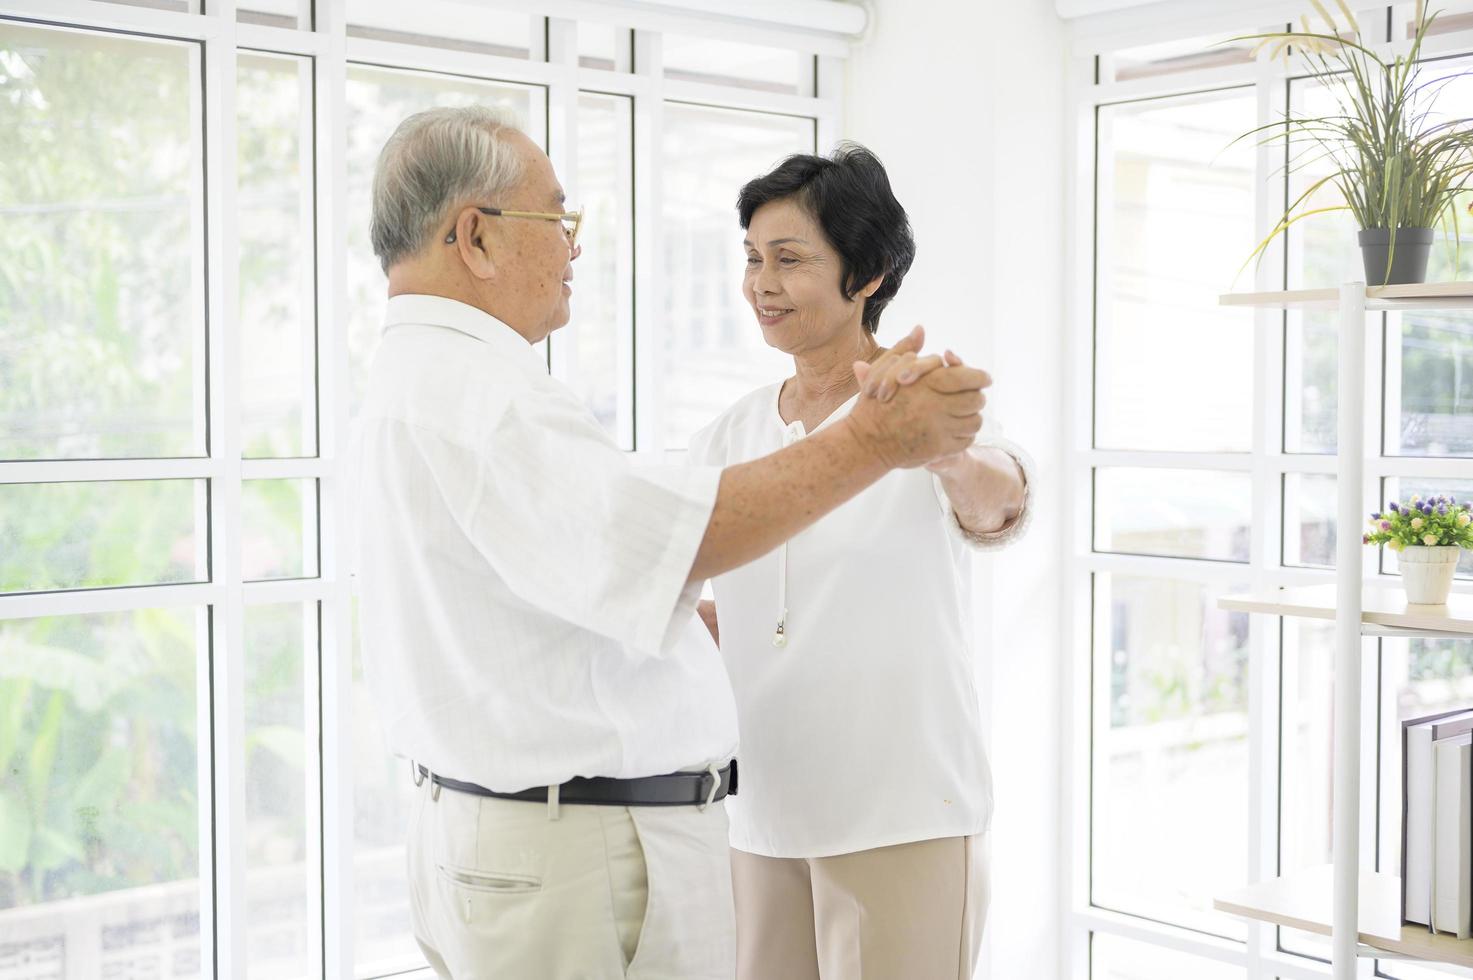 Fröhliches älteres asiatisches Rentnerehepaar tanzt und genießt die Musik im Wohnzimmer zu Hause, Gesundheitskonzept foto